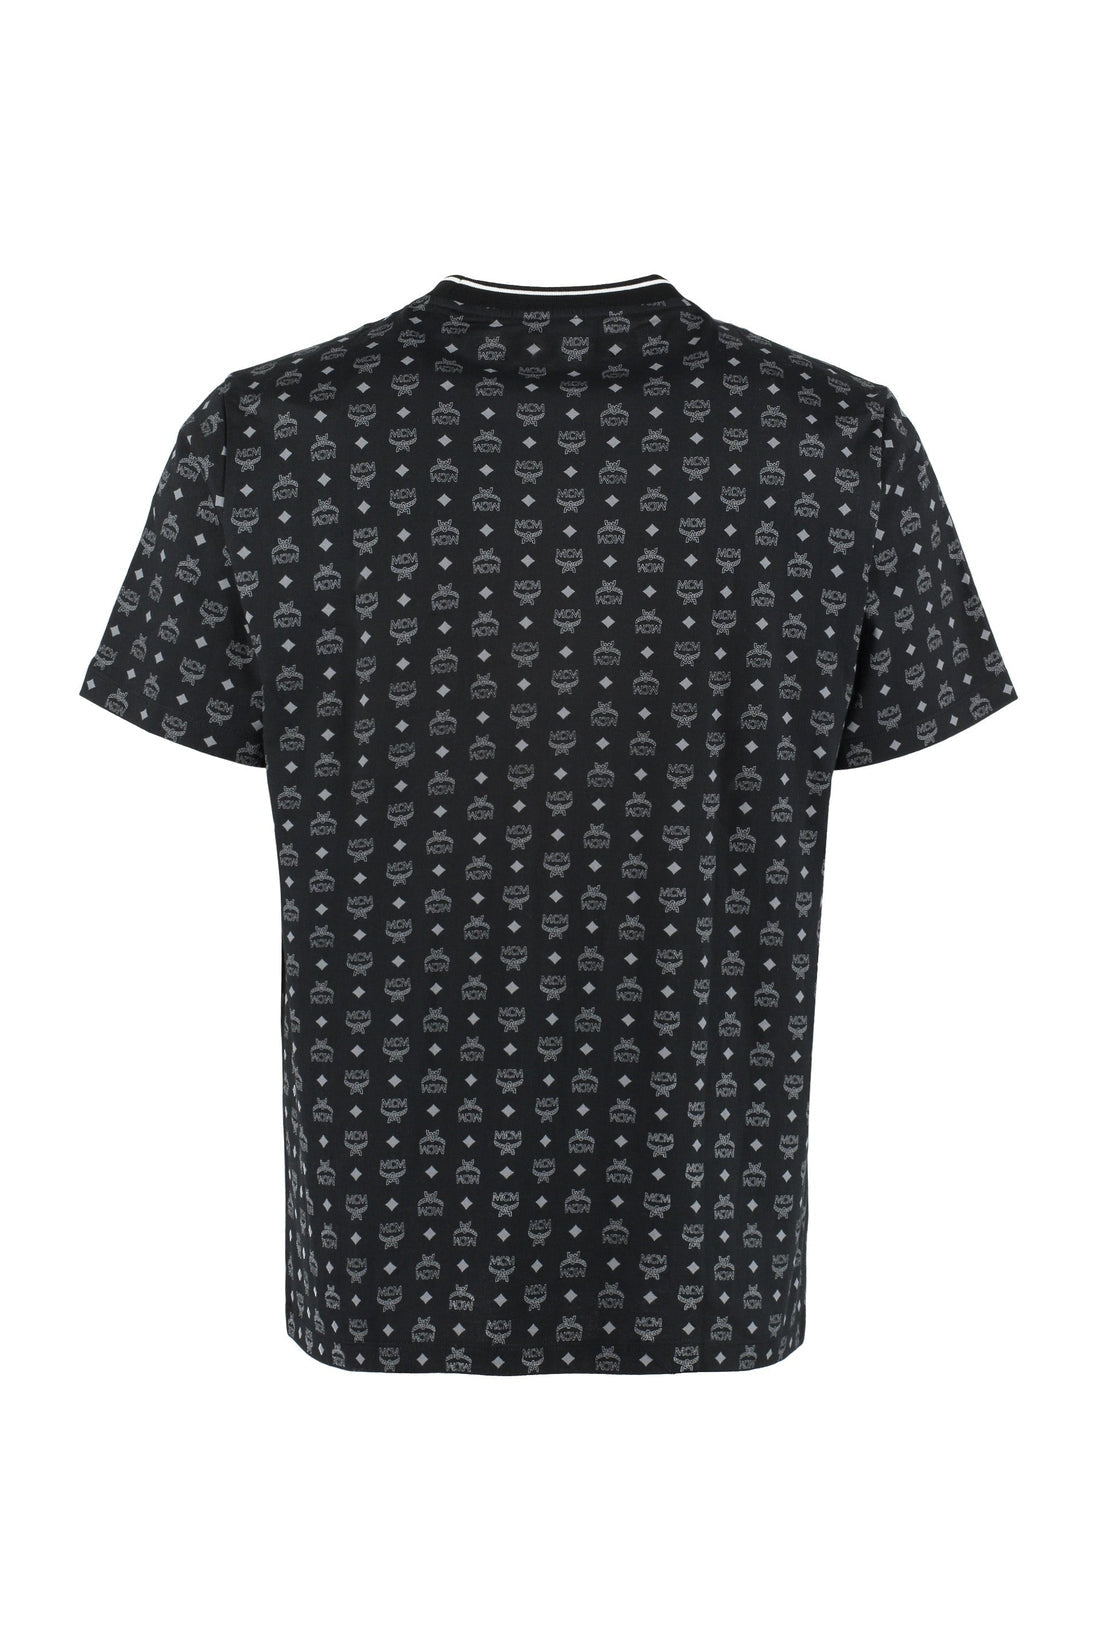 MCM-OUTLET-SALE-All-over logo cotton t-shirt-ARCHIVIST